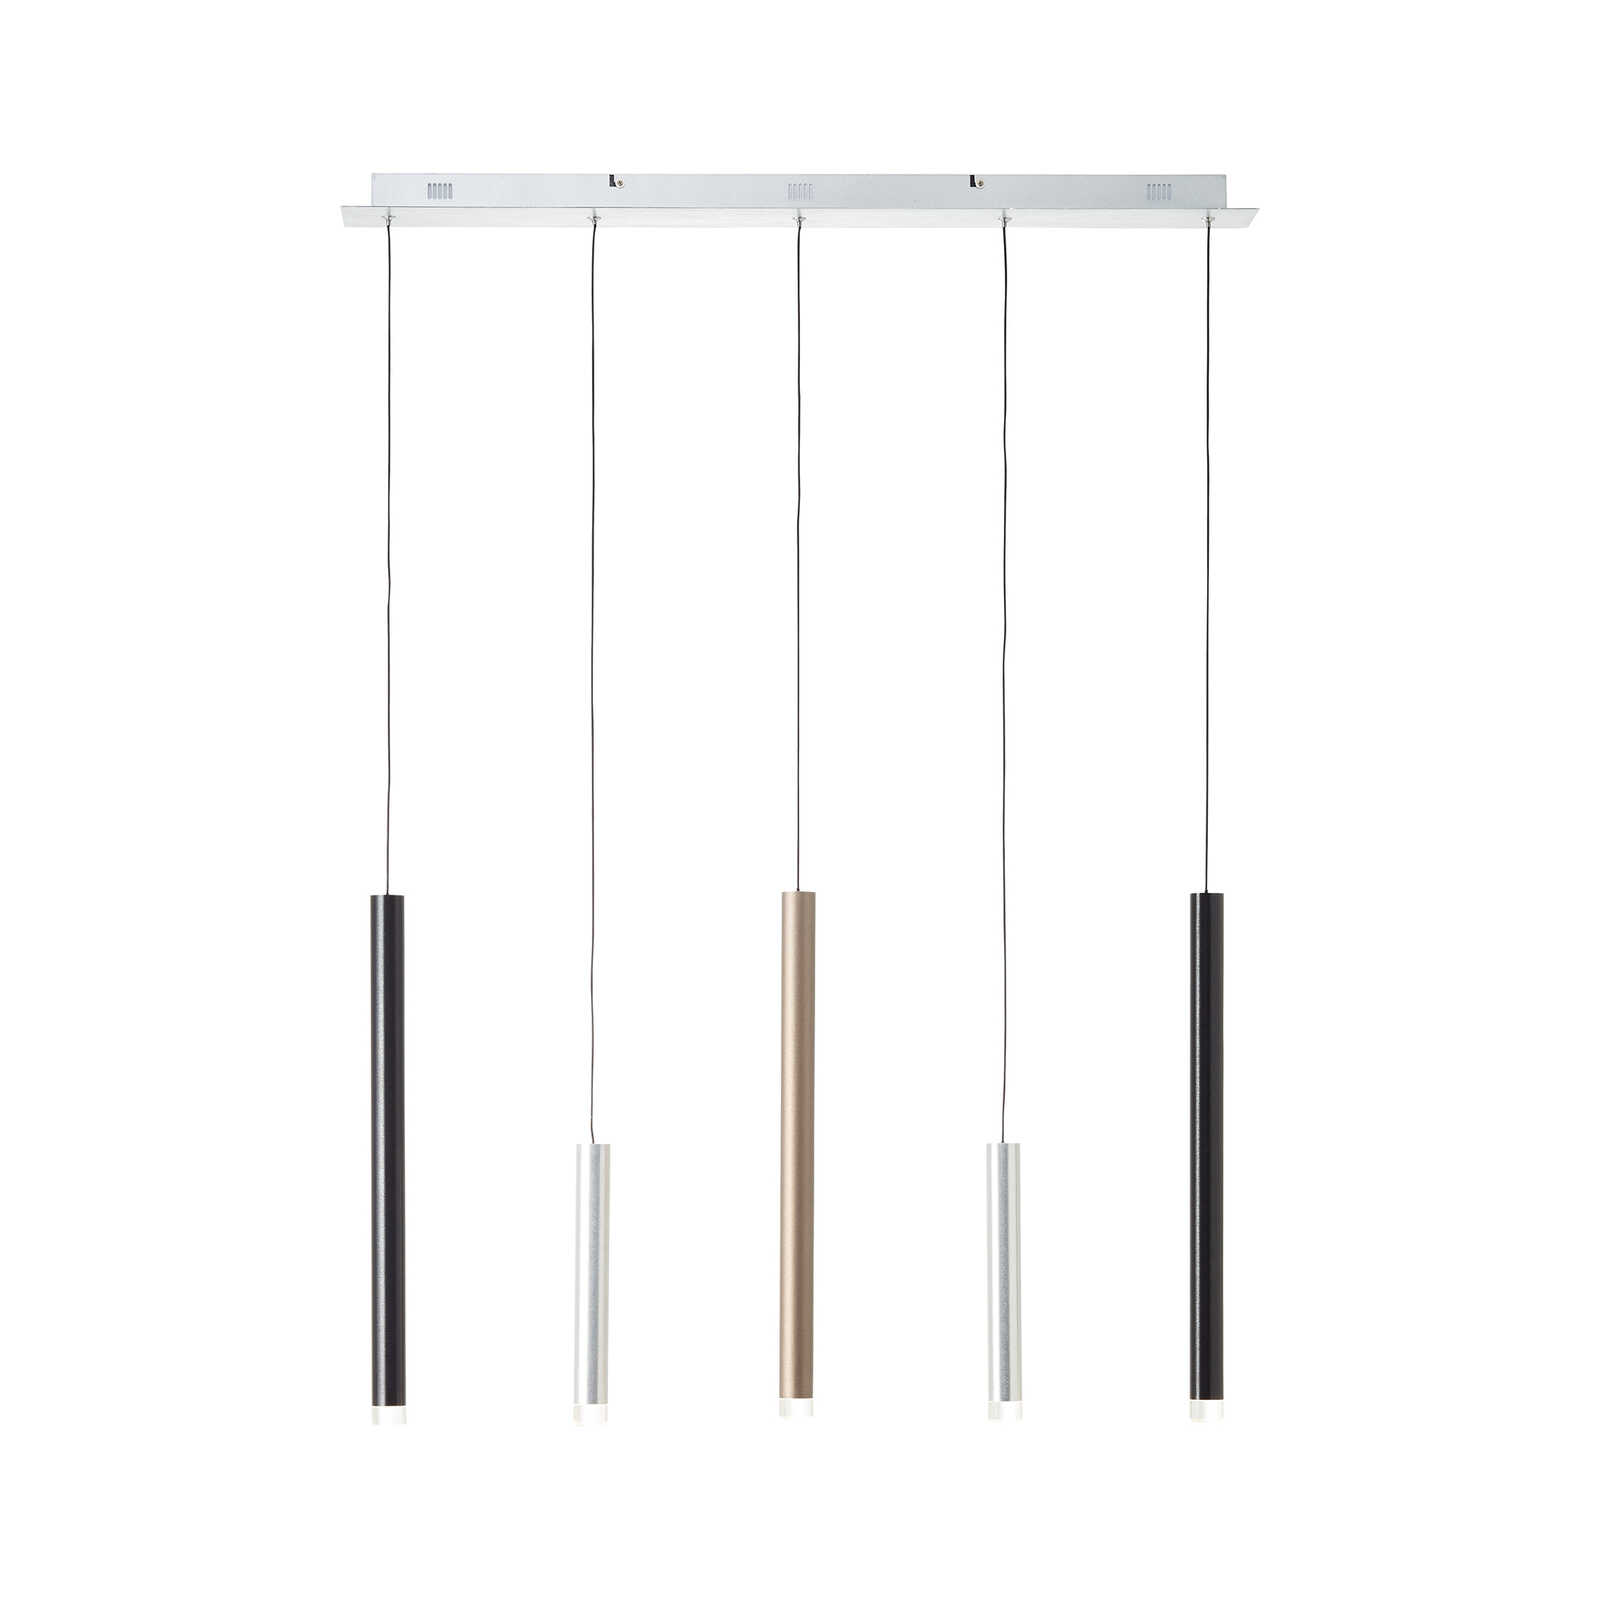 Metalen hanglamp - Eddy 3 - Bruin
